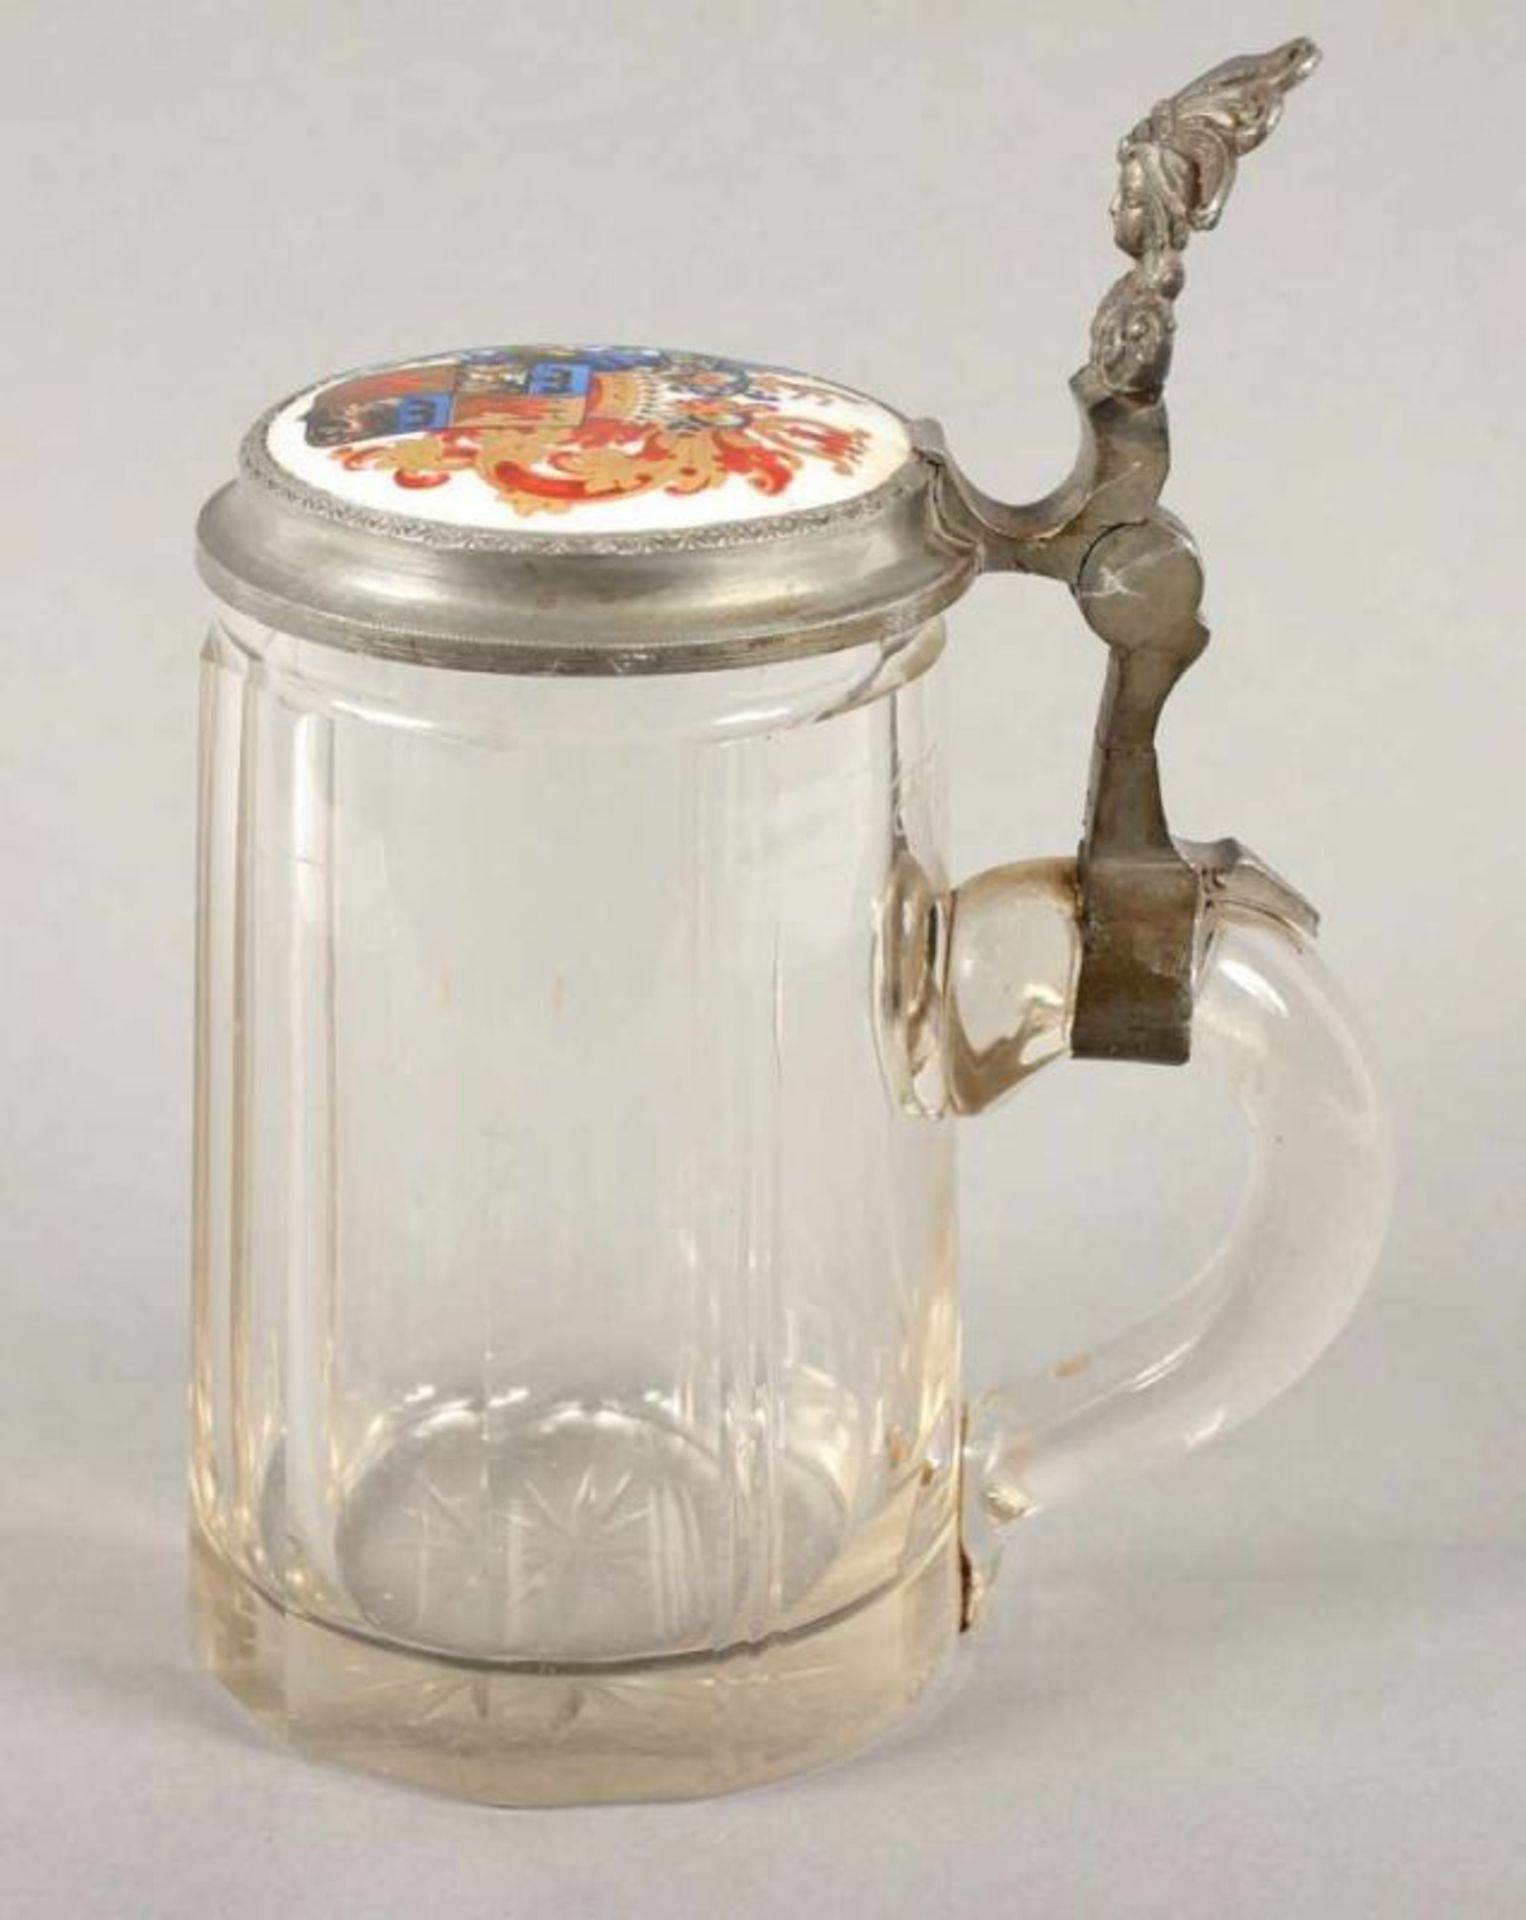 HUMPEN, farbloses Glas, Zinnmontur, Porzellanmedaillon mit polychrom gemalter Wappenzier, H 18,5, - Bild 2 aus 4